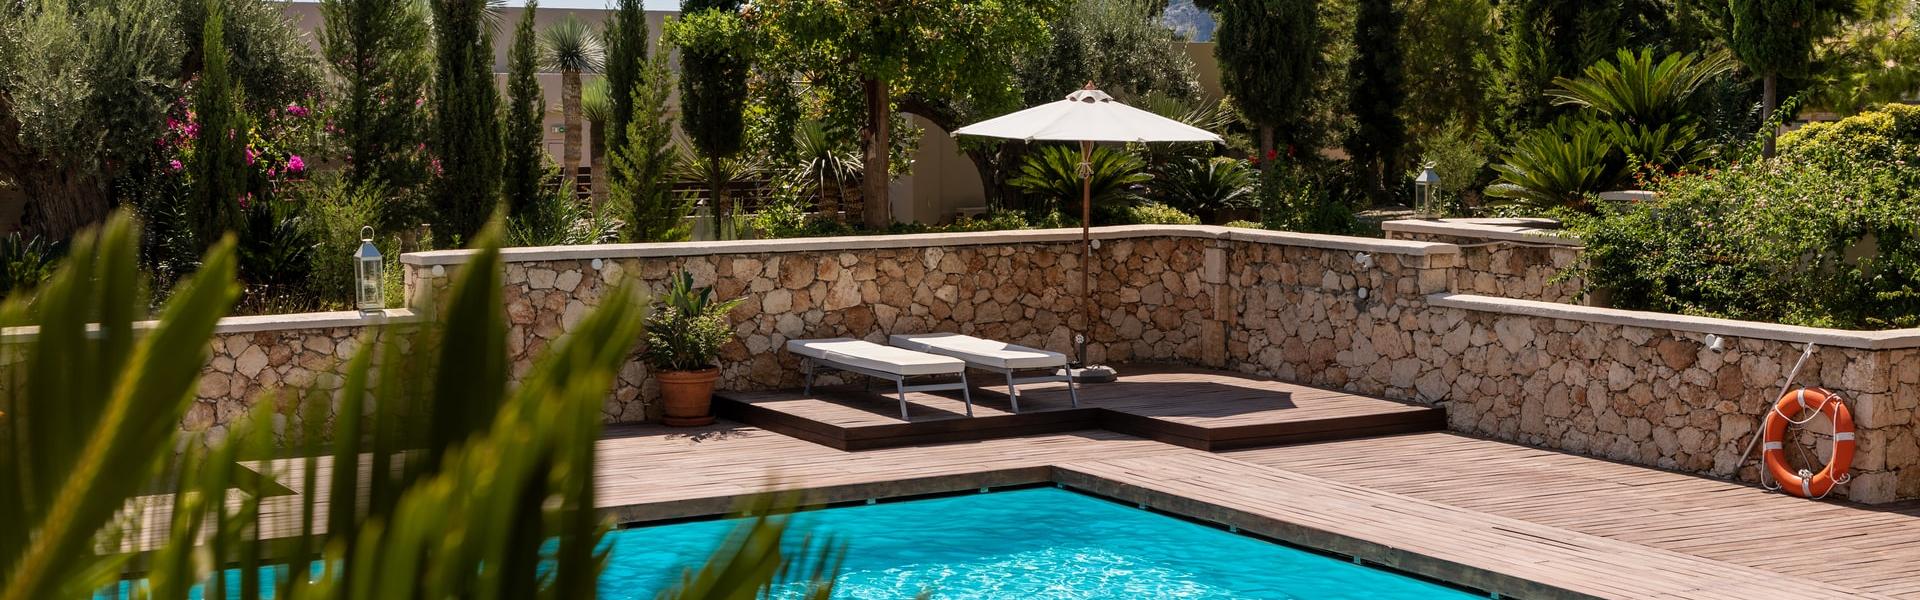 Ferienhaus mit Pool auf Zypern - Wimdu